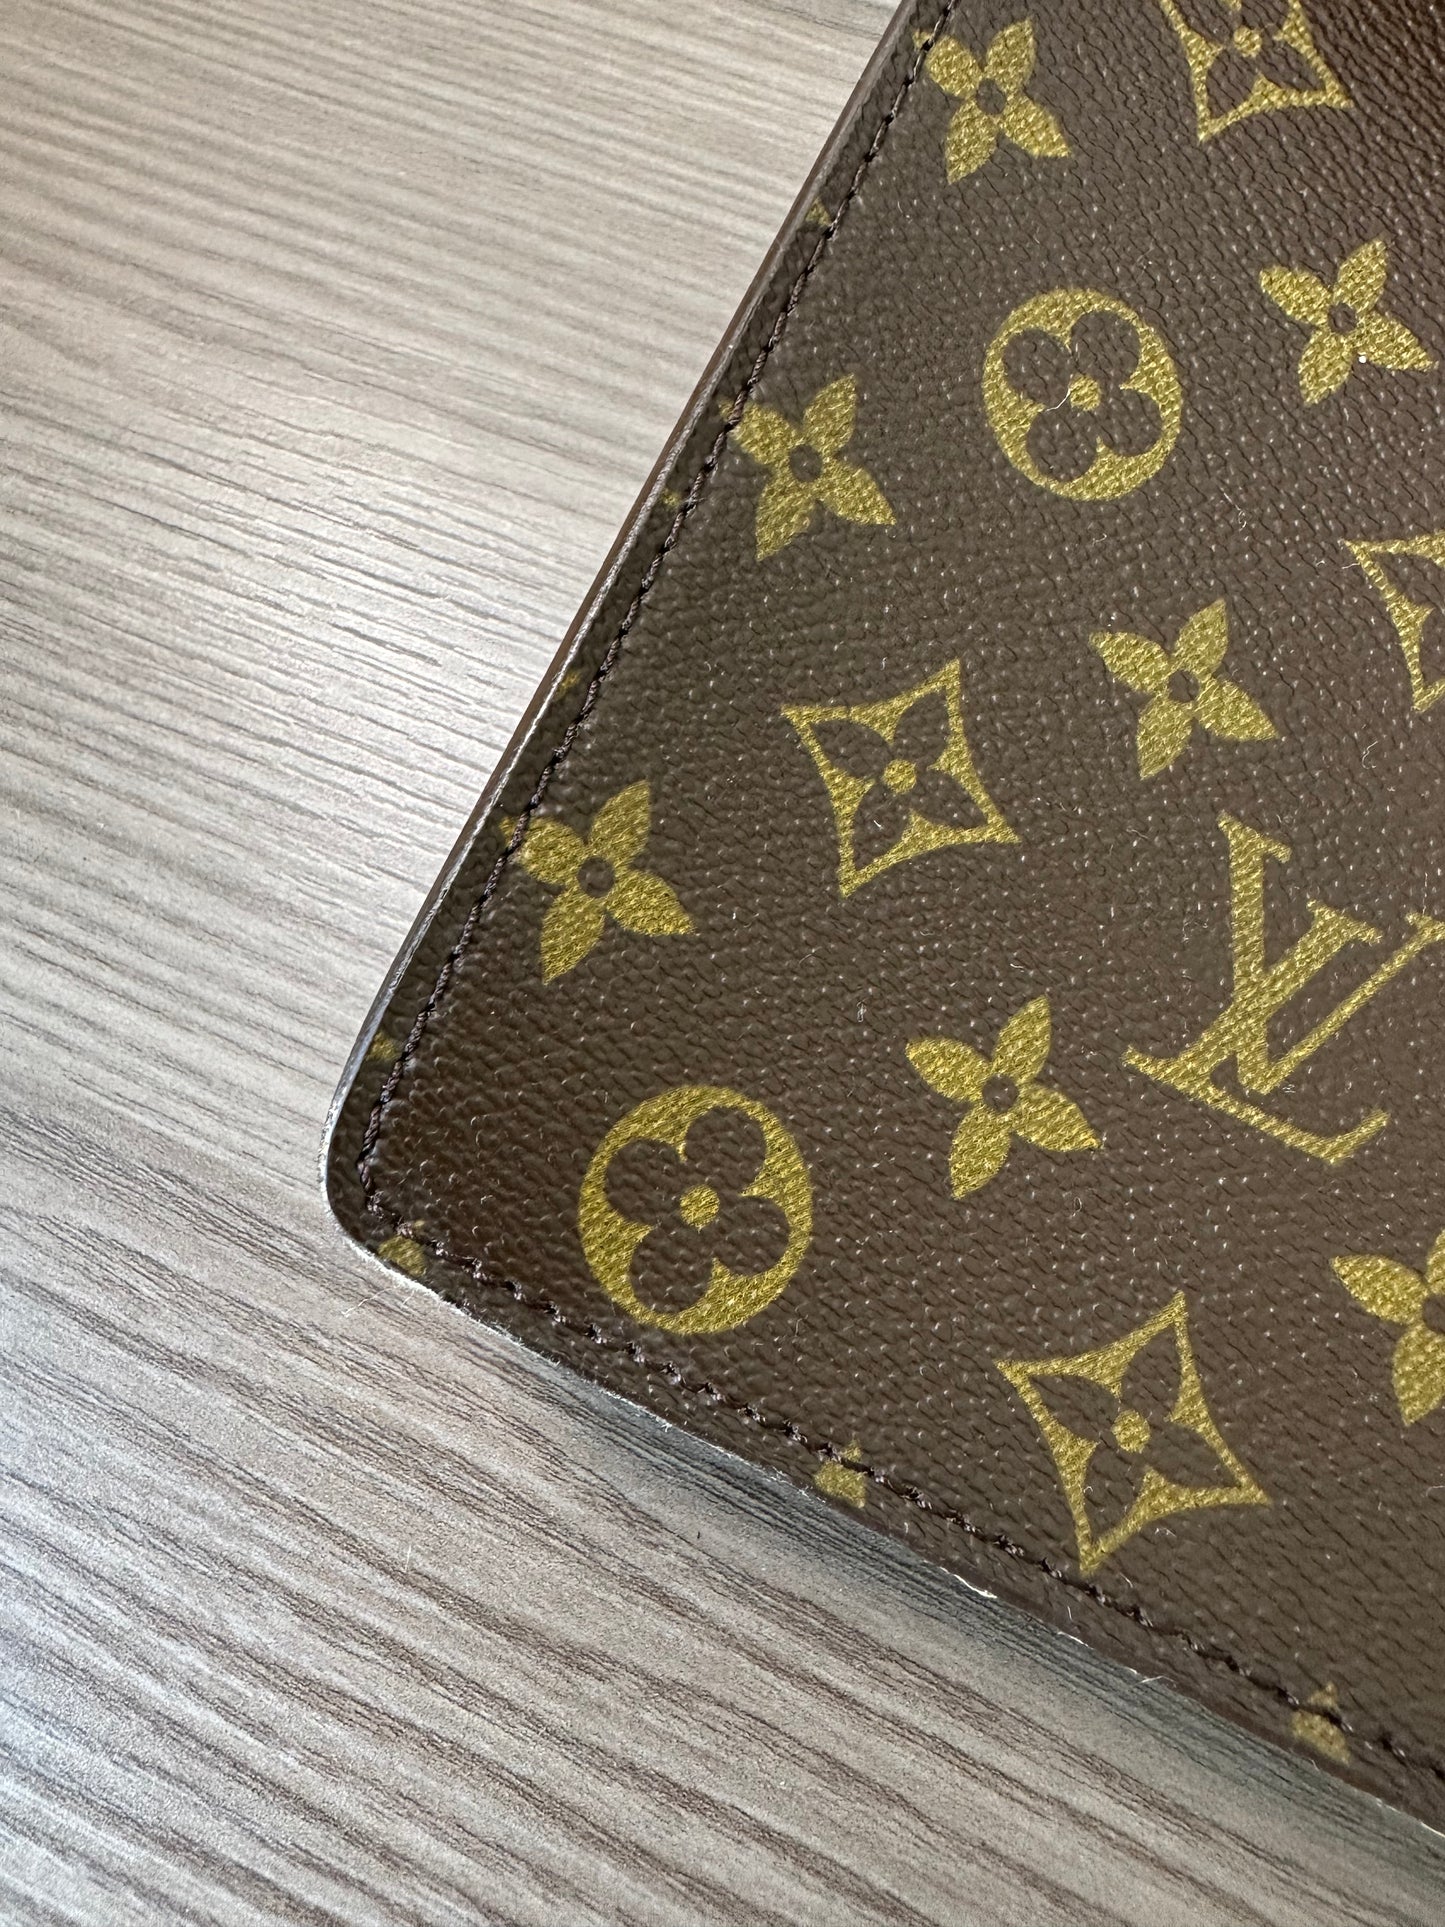 Pre-owned Authentic Louis Vuitton Monogram Porte Documents / Laptop Handbag